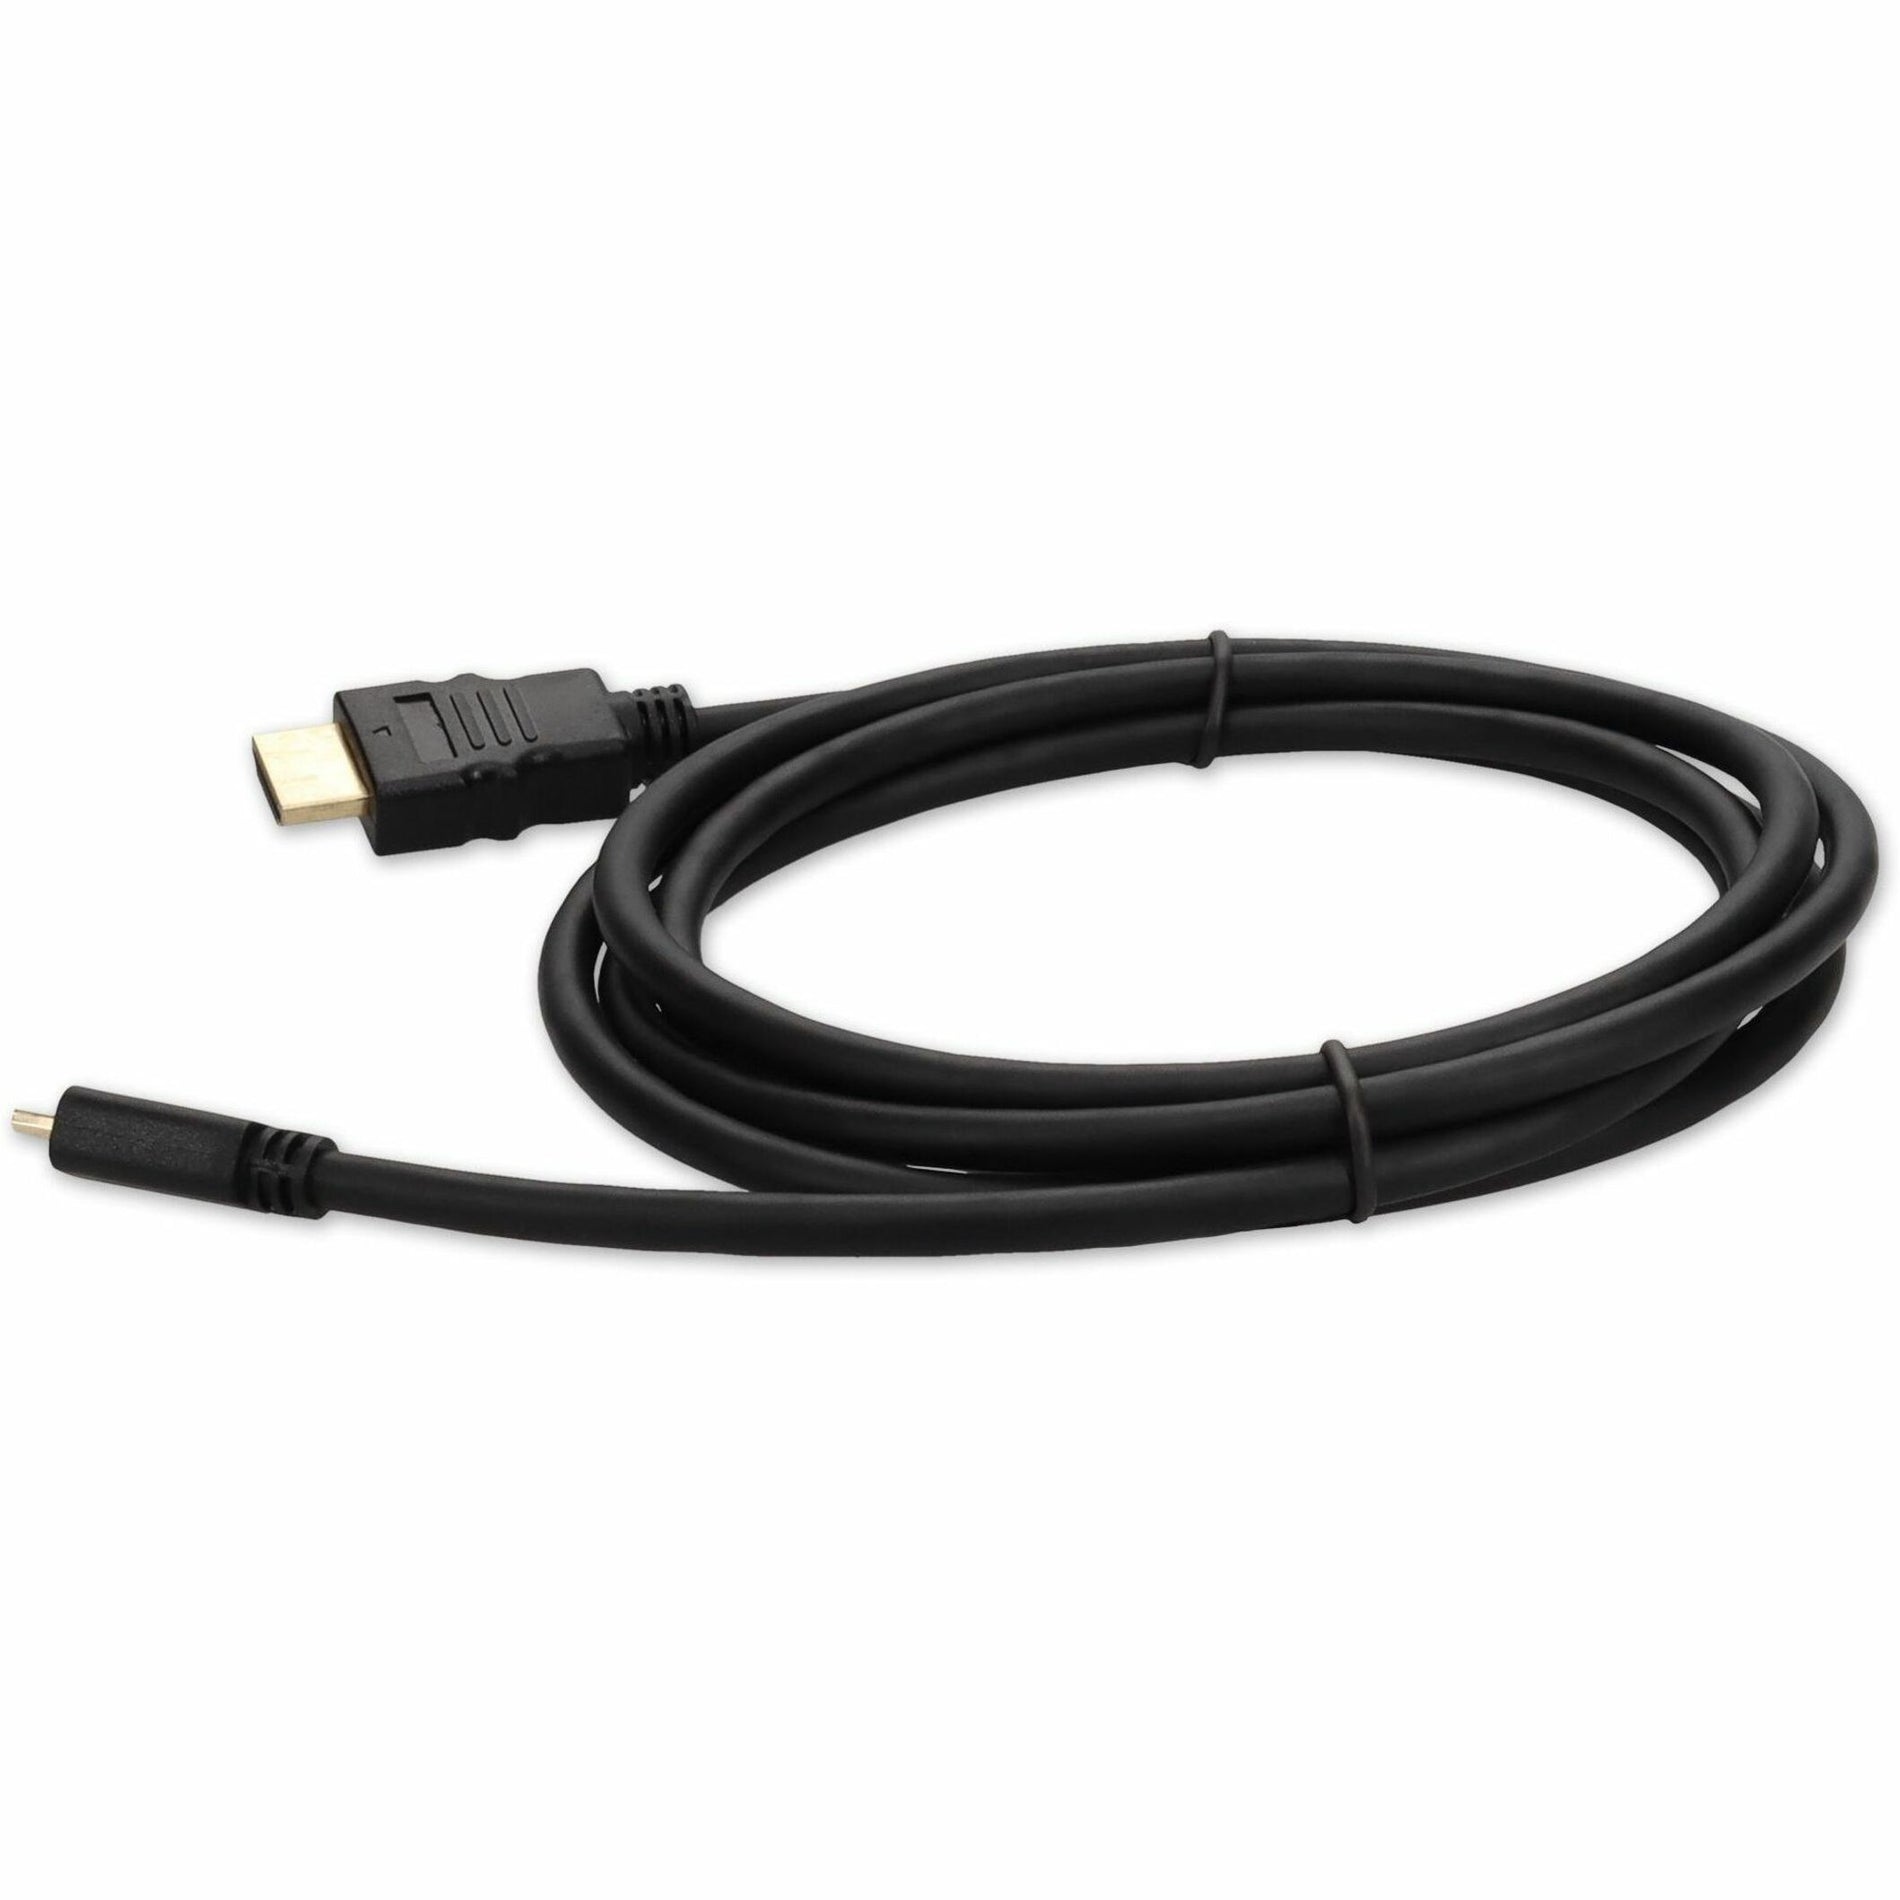 アダプトン HDMI2MHDMI3 3ft (30cm) HDMI to Micro-HDMI アダプターケーブル - メス to メス、銅導体、3 フィート ケーブル長、黒。ブランド名: アドオン。